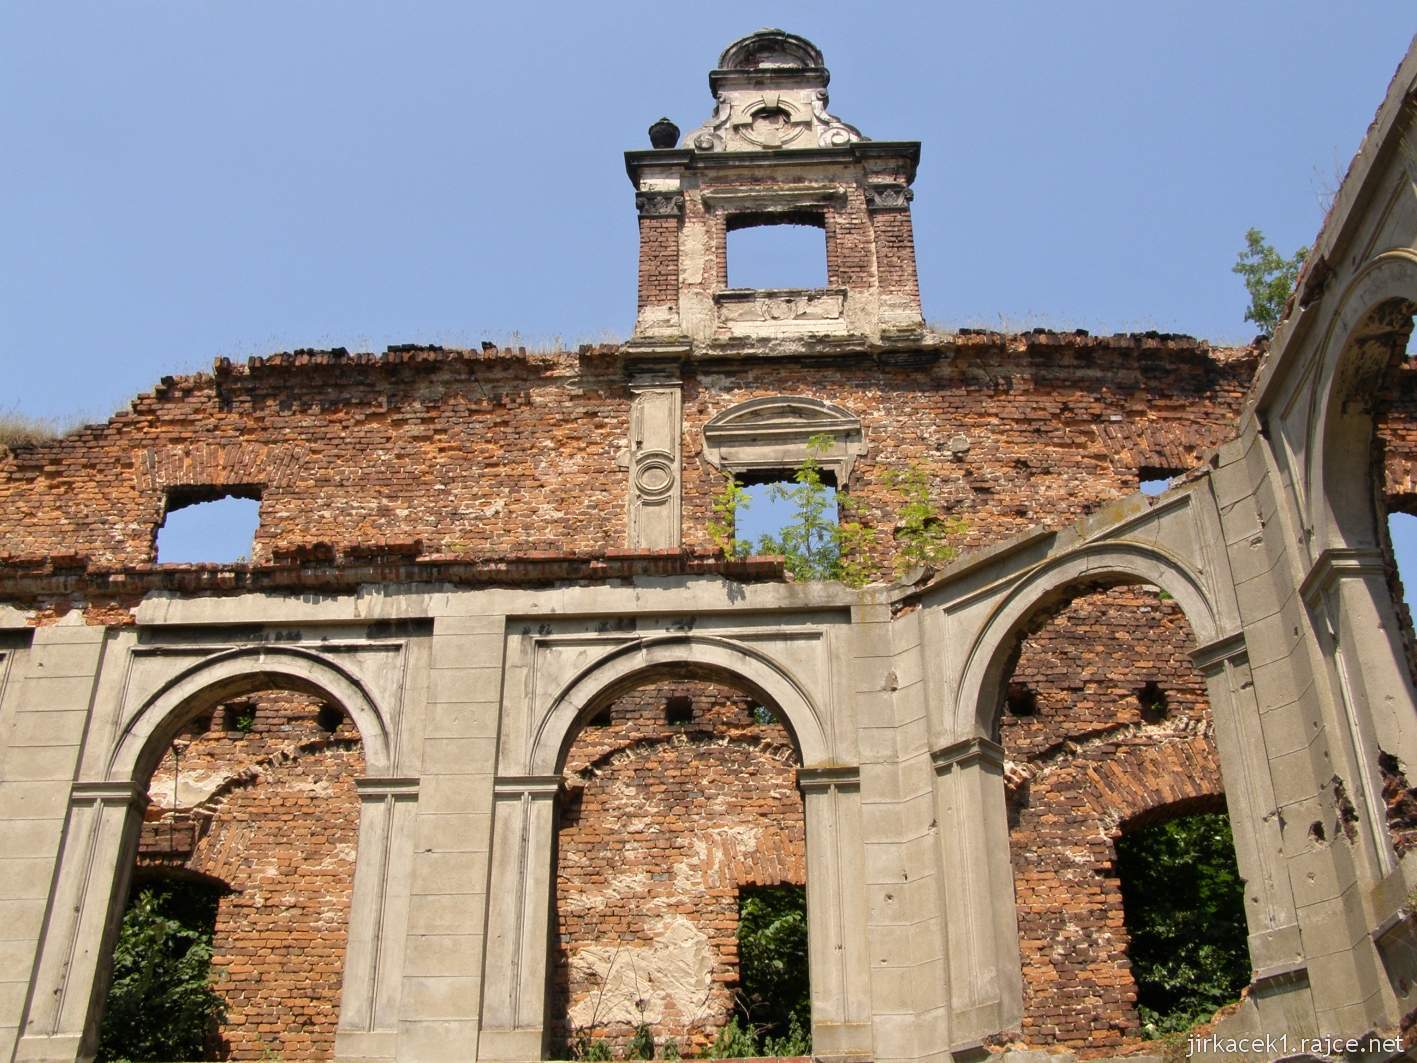 Tworków - ruiny zámku 34 - arkády a střešní štíty